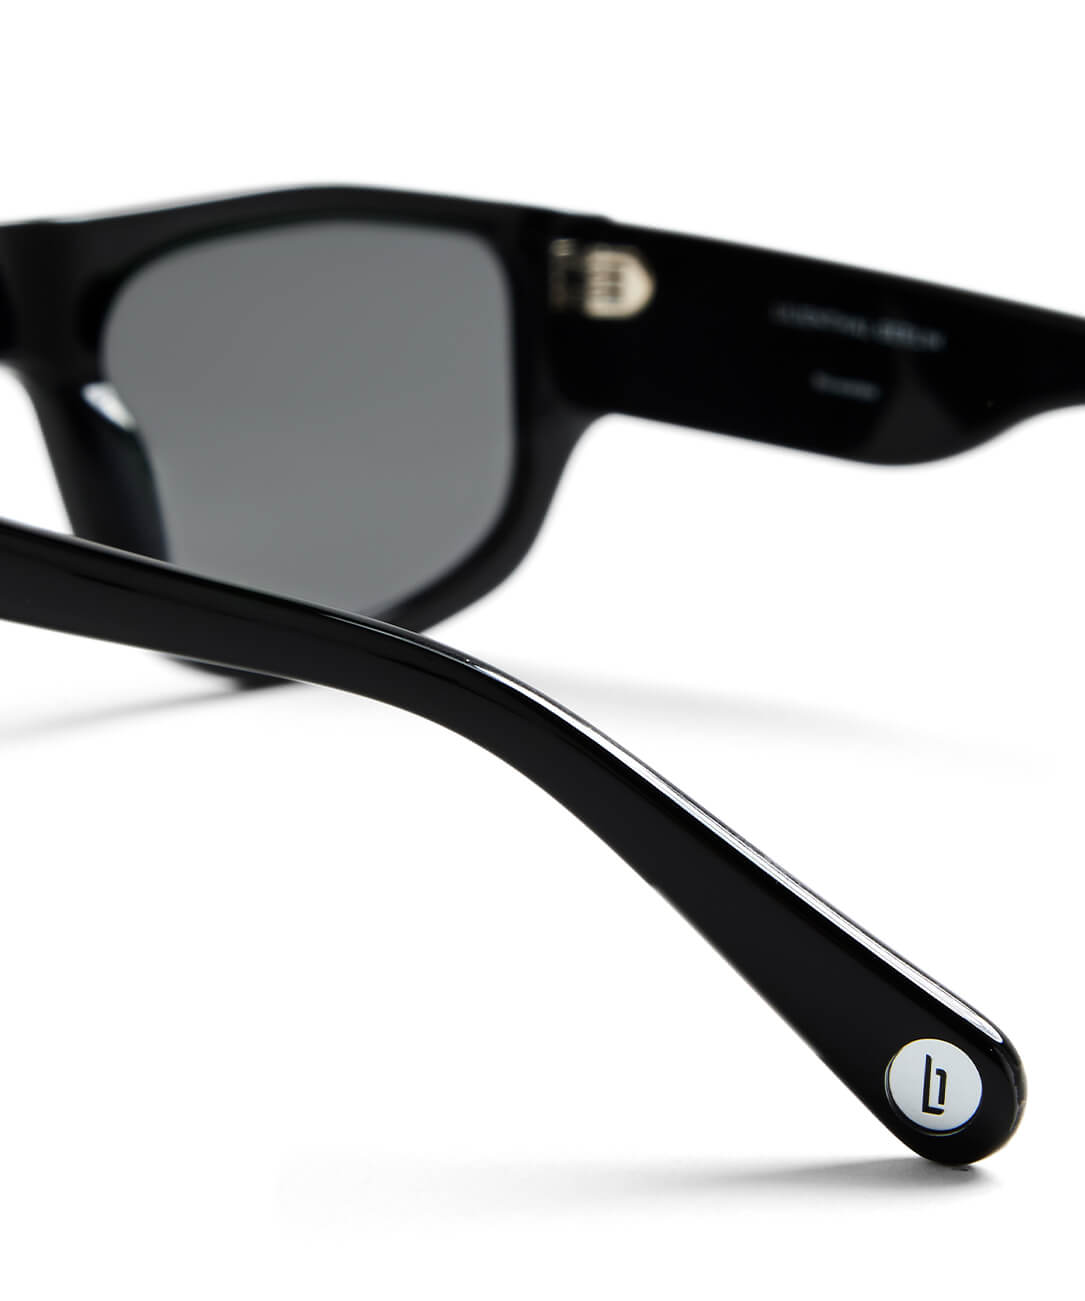 Sonnenbrille Nightcore Black Gray | Alle Sonnenbrillen | Sonnenbrillen |  Lilienthal Berlin - Preisgekrönte Designs